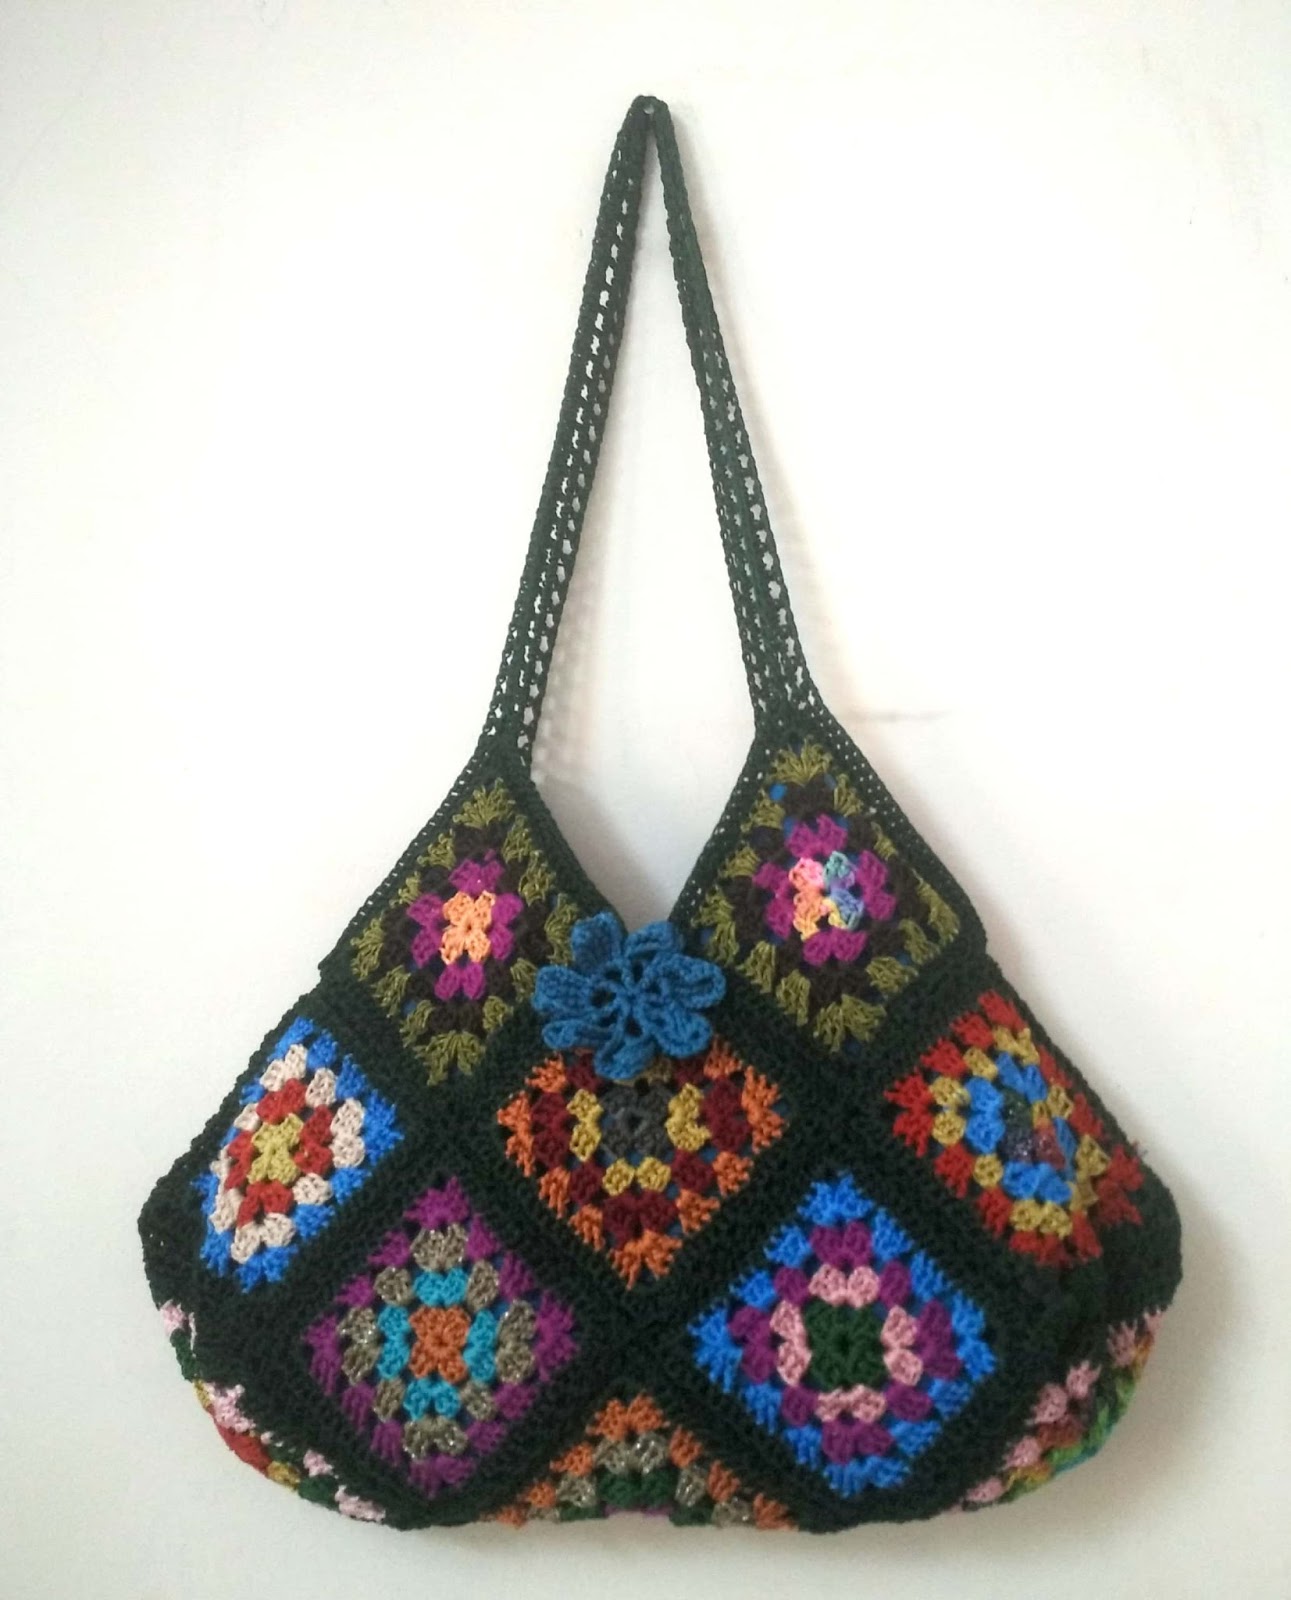 crochet kalaakari: Crochet 17 granny square bag for beginners -free pattern